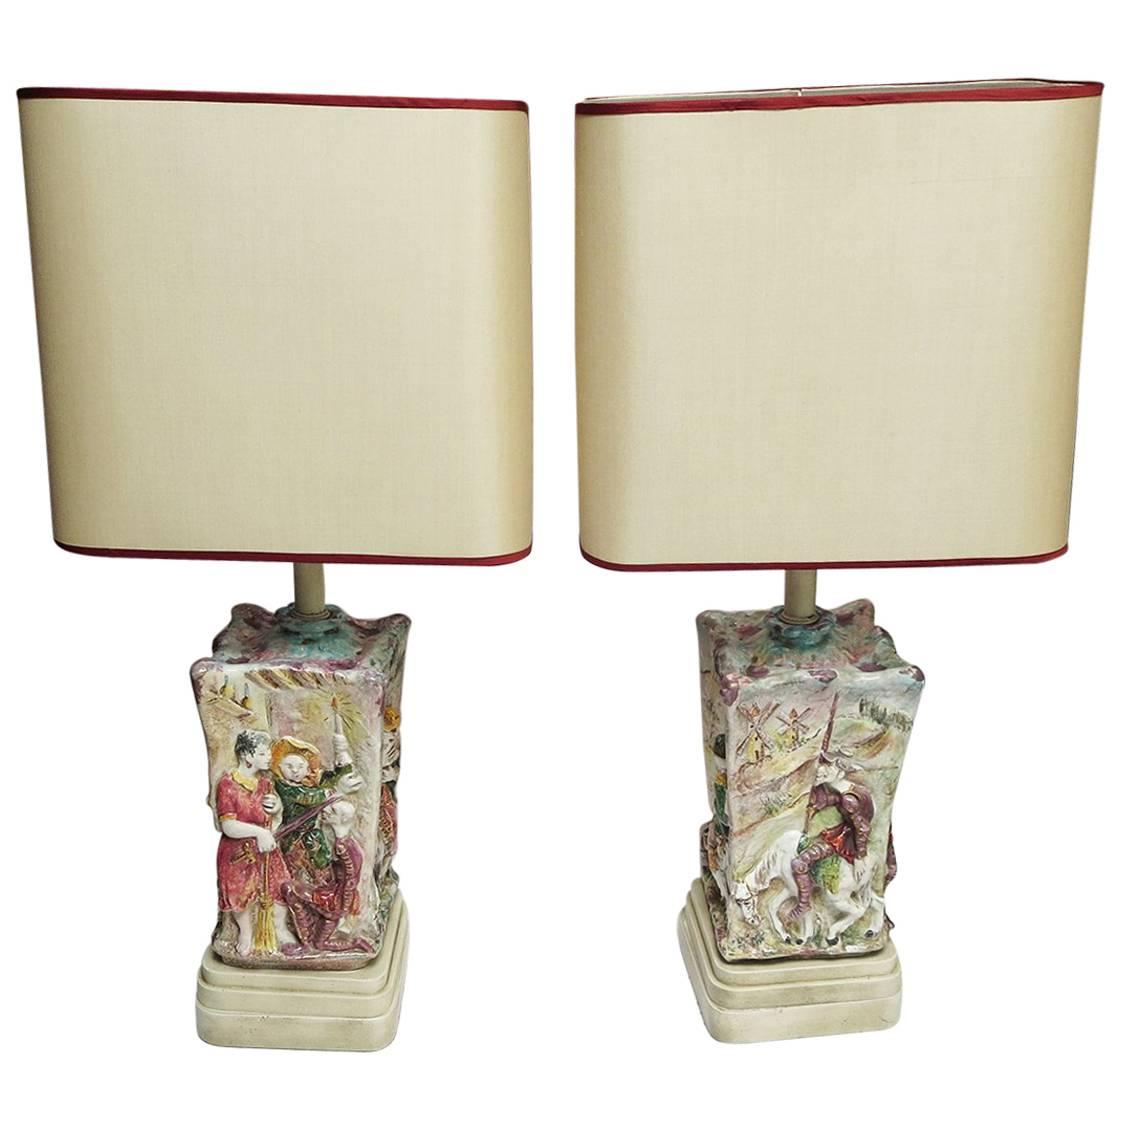 Midcentury Don Quixote Ceramic Table Lamps